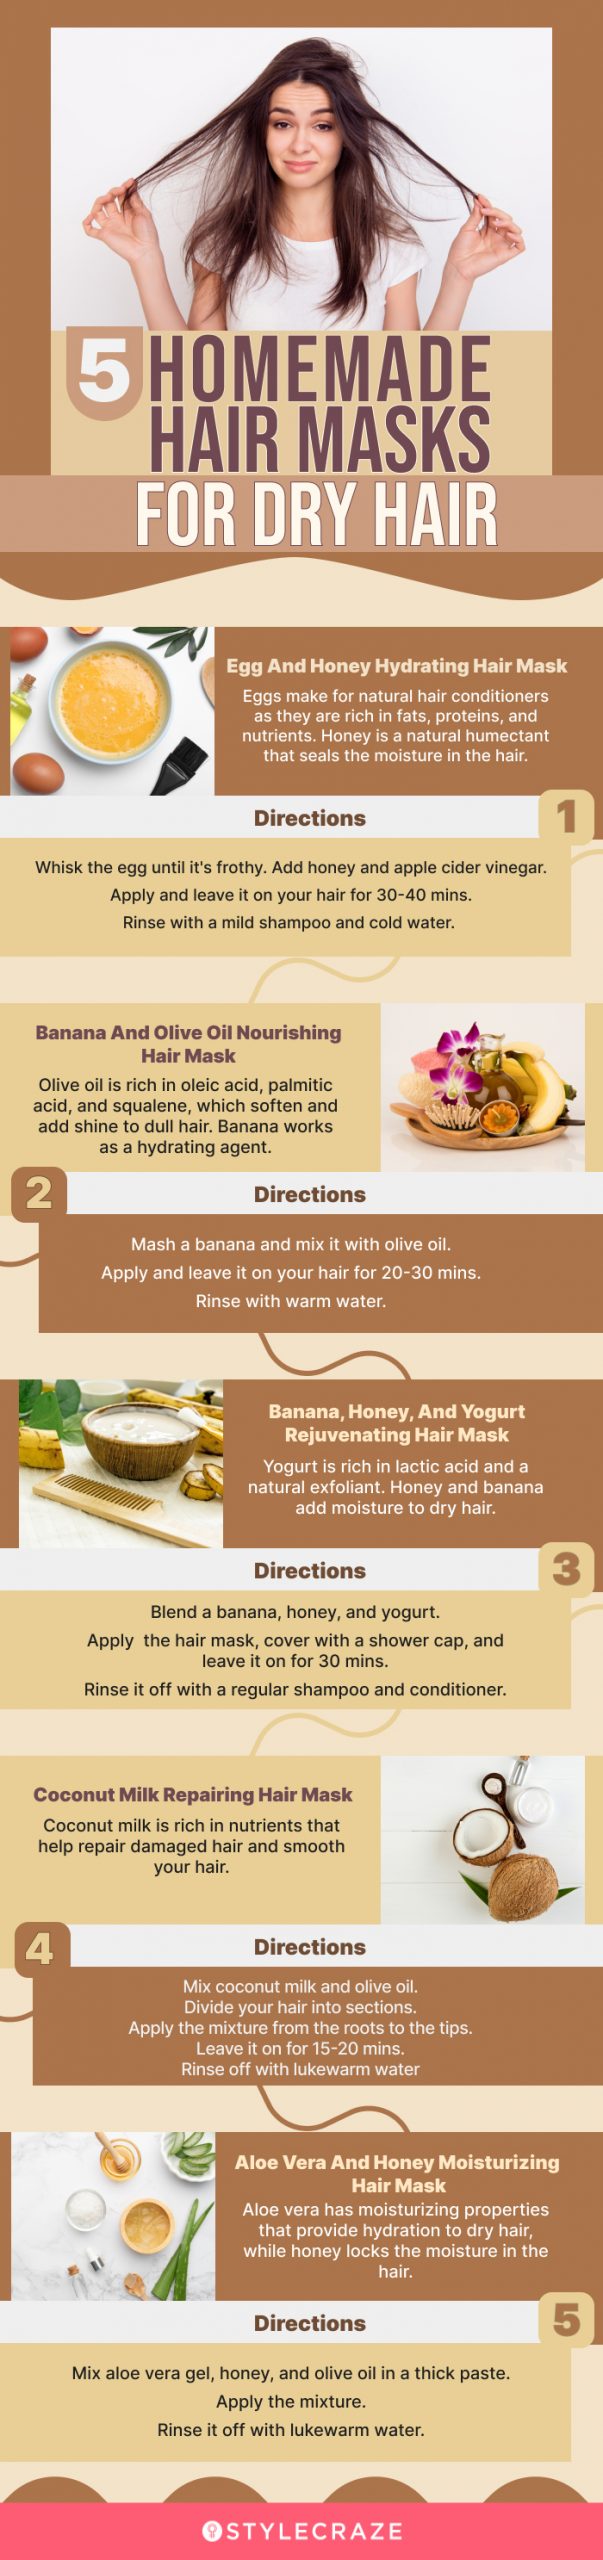 5 homemade hair masks for dry hair (infographic)